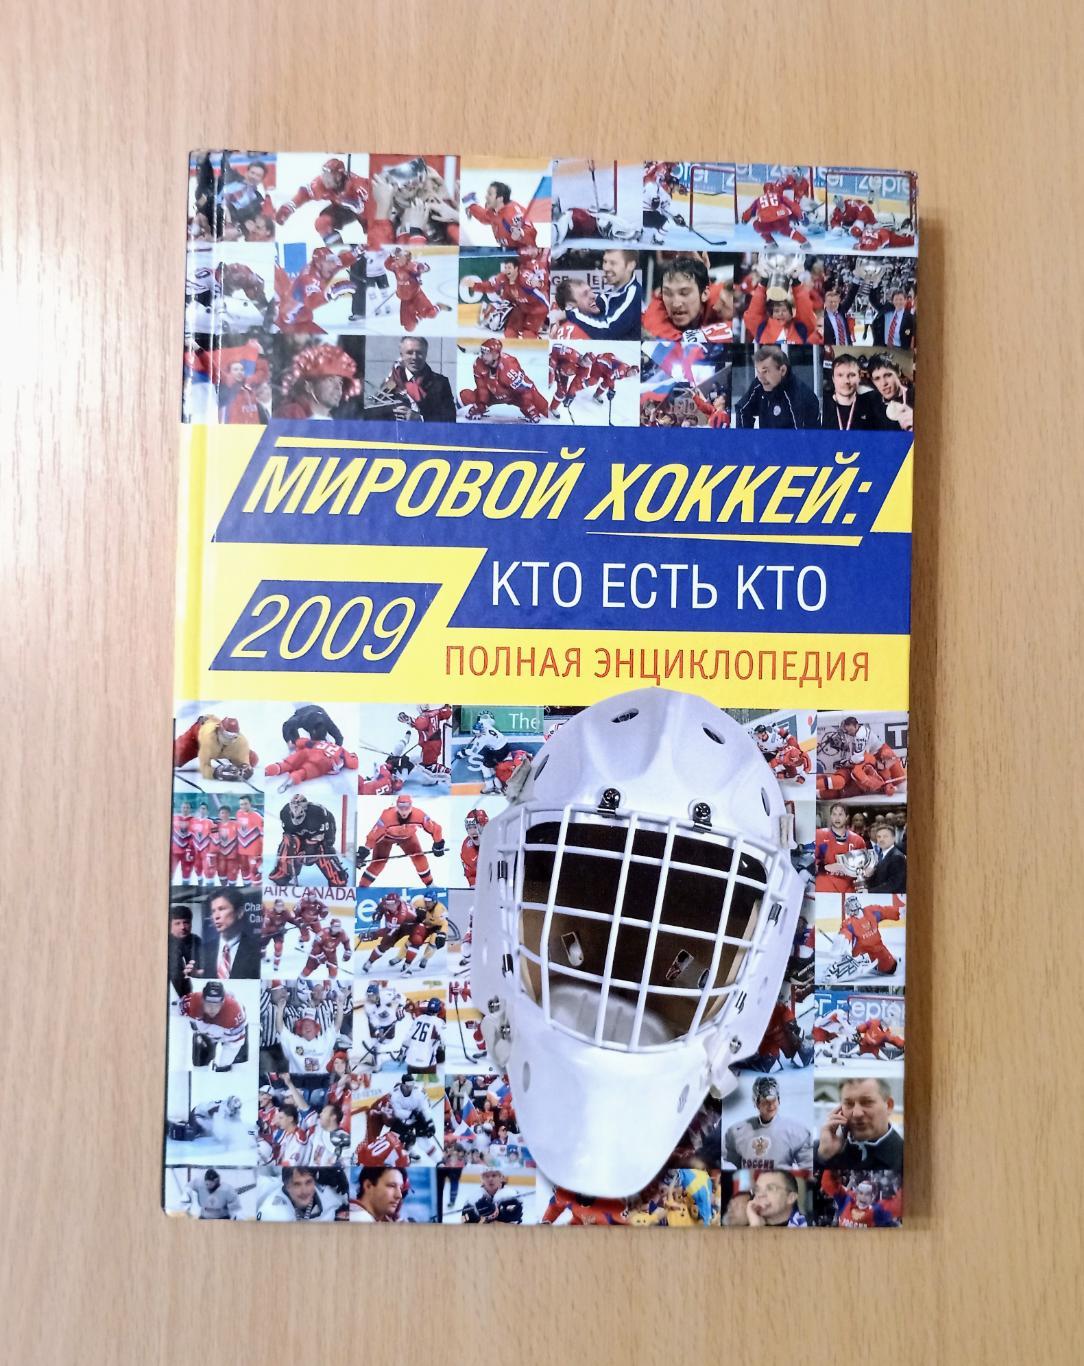 Мировой хоккей: кто есть кто: Полная энциклопедия. 2009